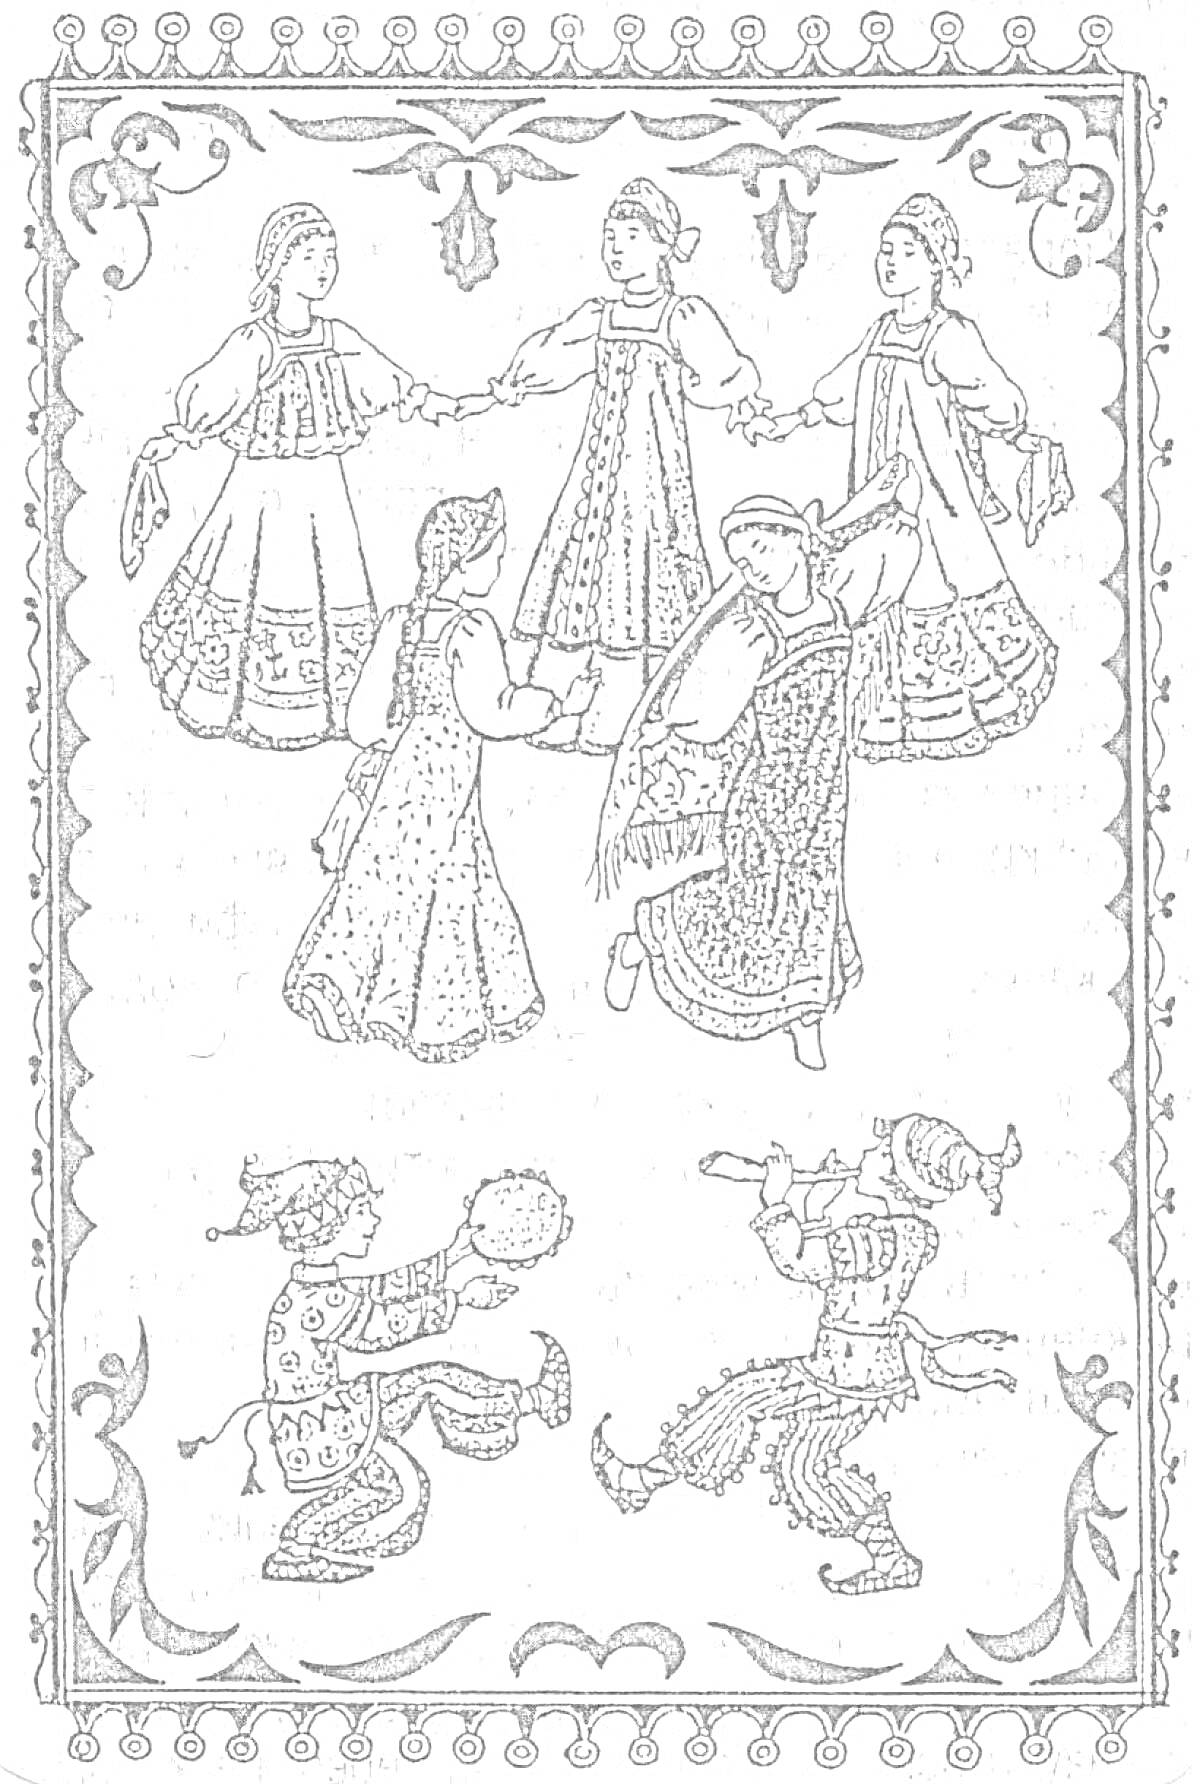 Раскраска Хоровод из шести детей в народных костюмах, двое играют на инструментах